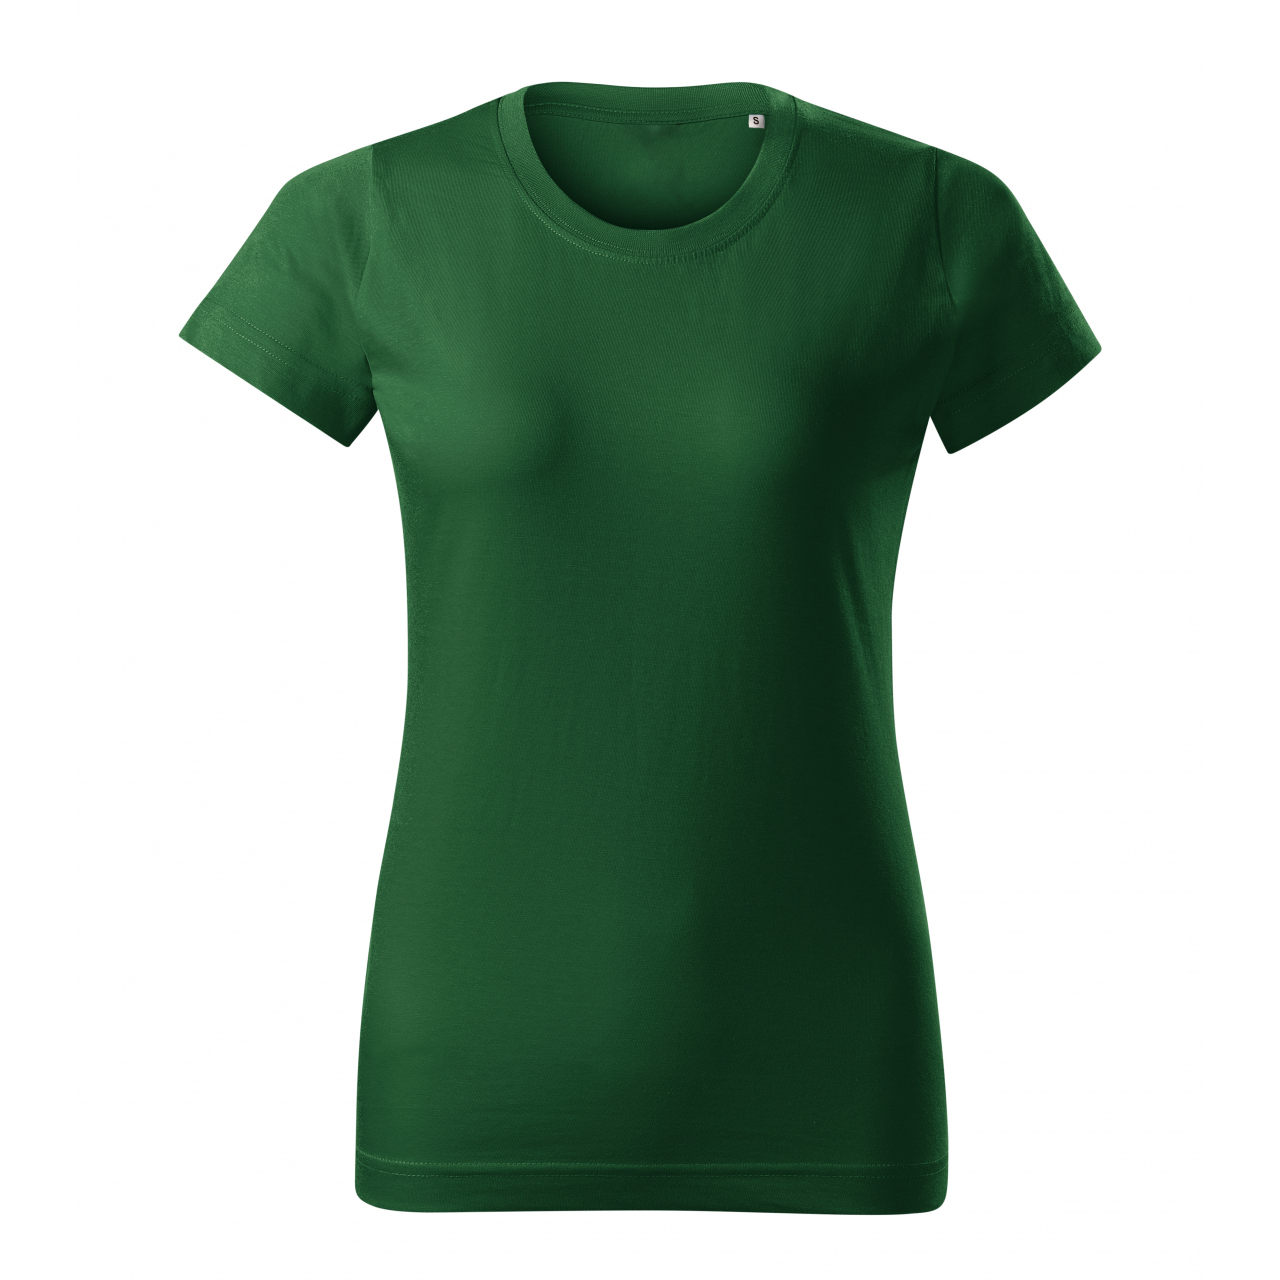 Tričko dámské Malfini Basic Free - tmavě zelené, XL